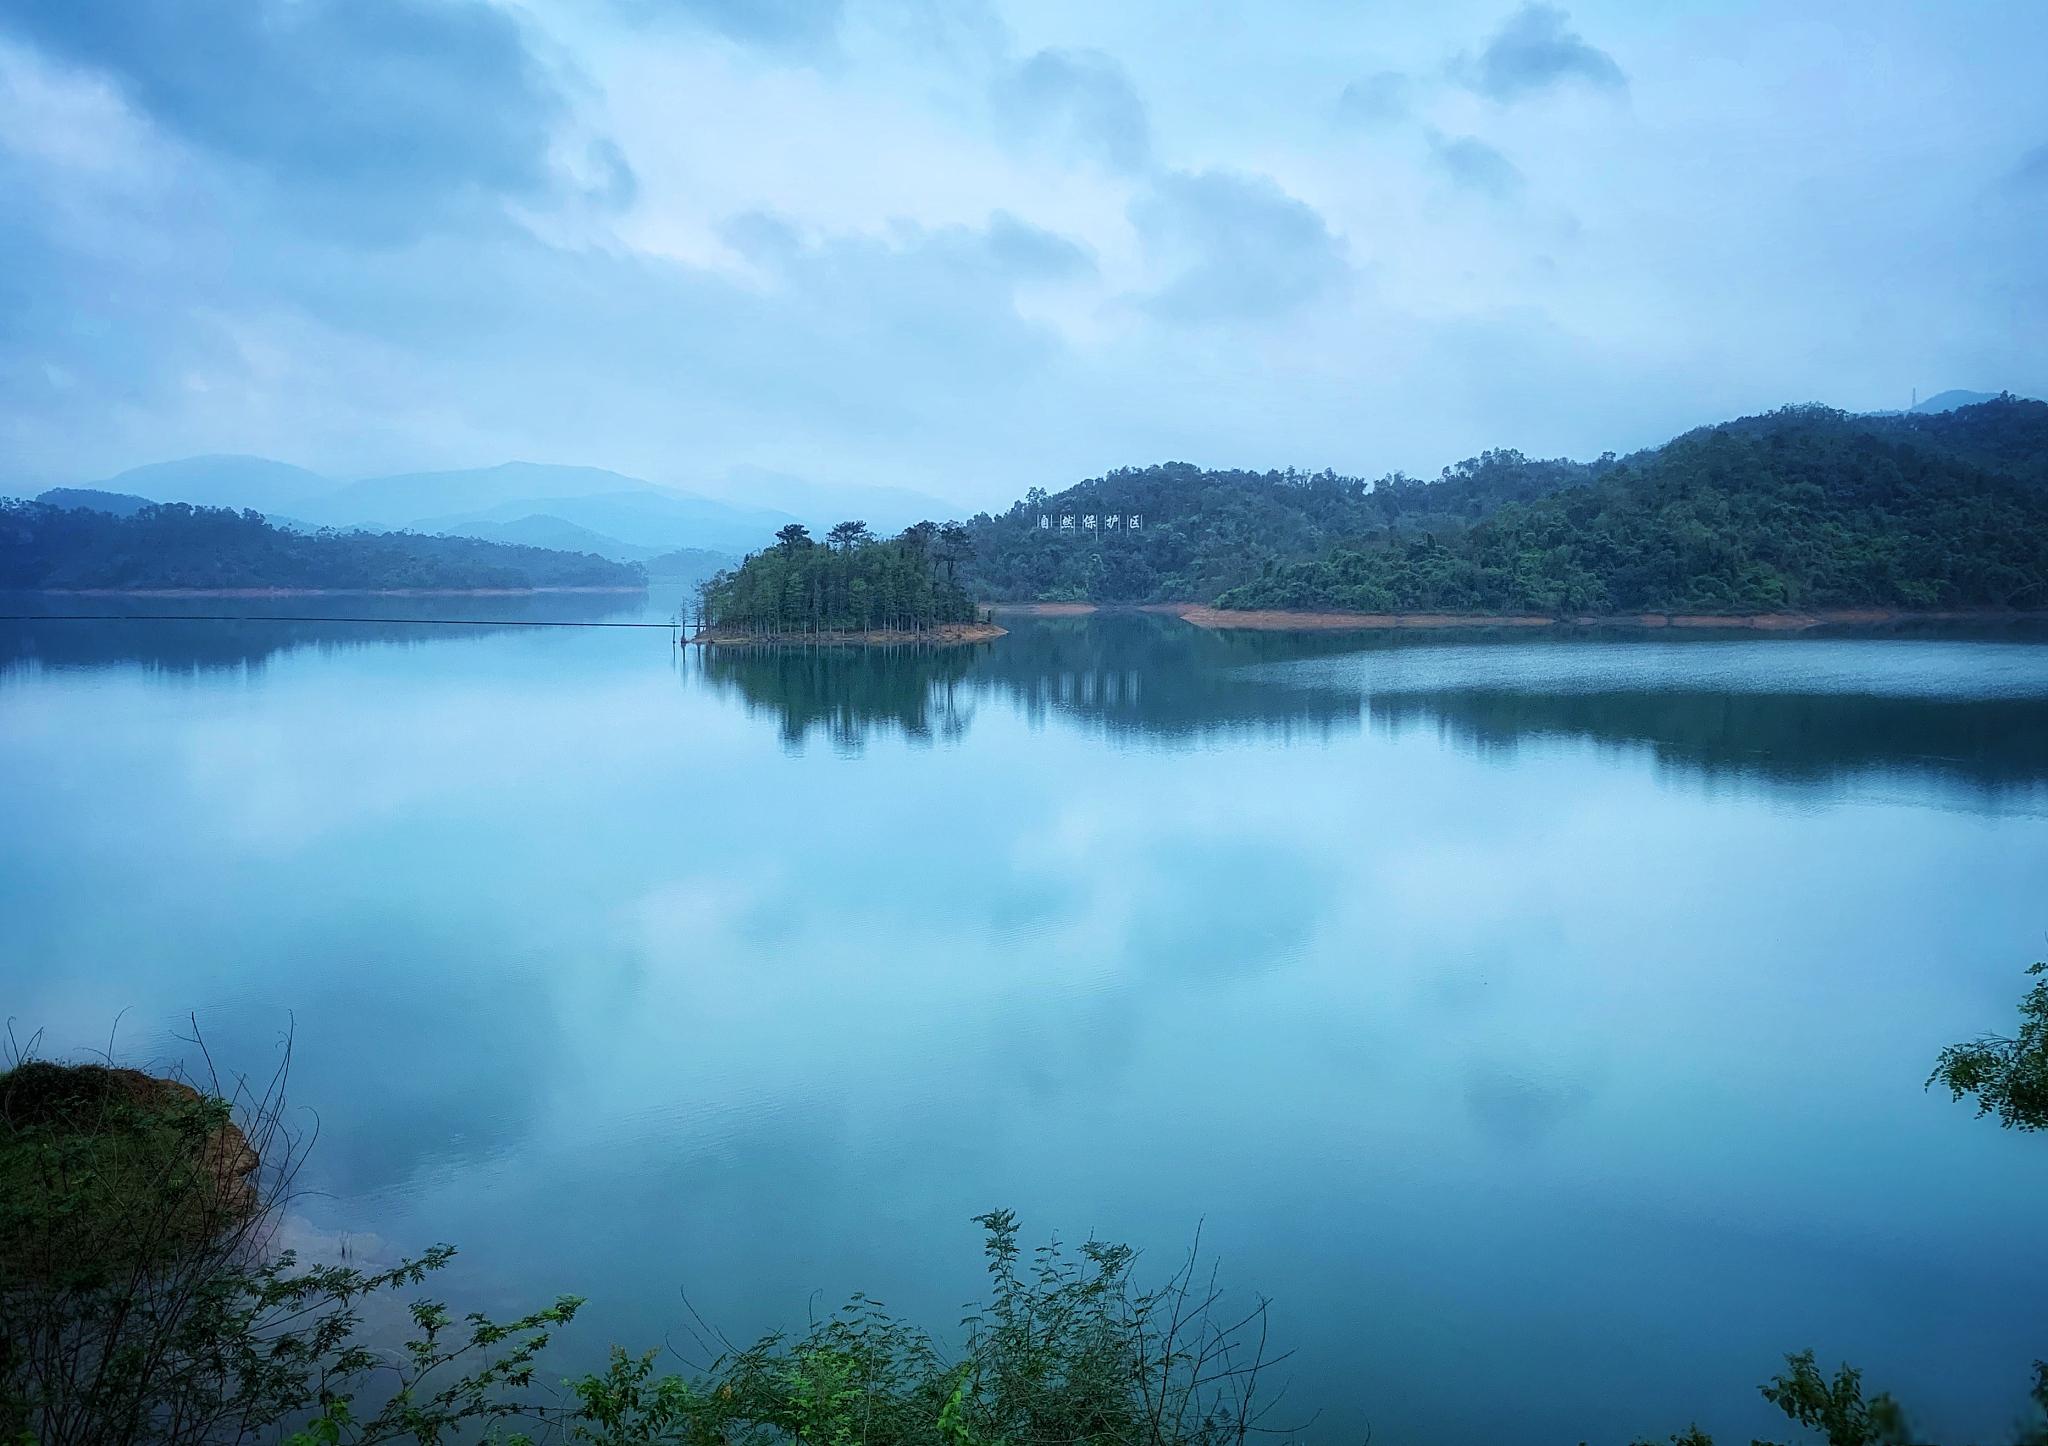 清溪湖,一个令人陶醉的地方 清溪湖,一个令人陶醉的地方,它的美丽景色